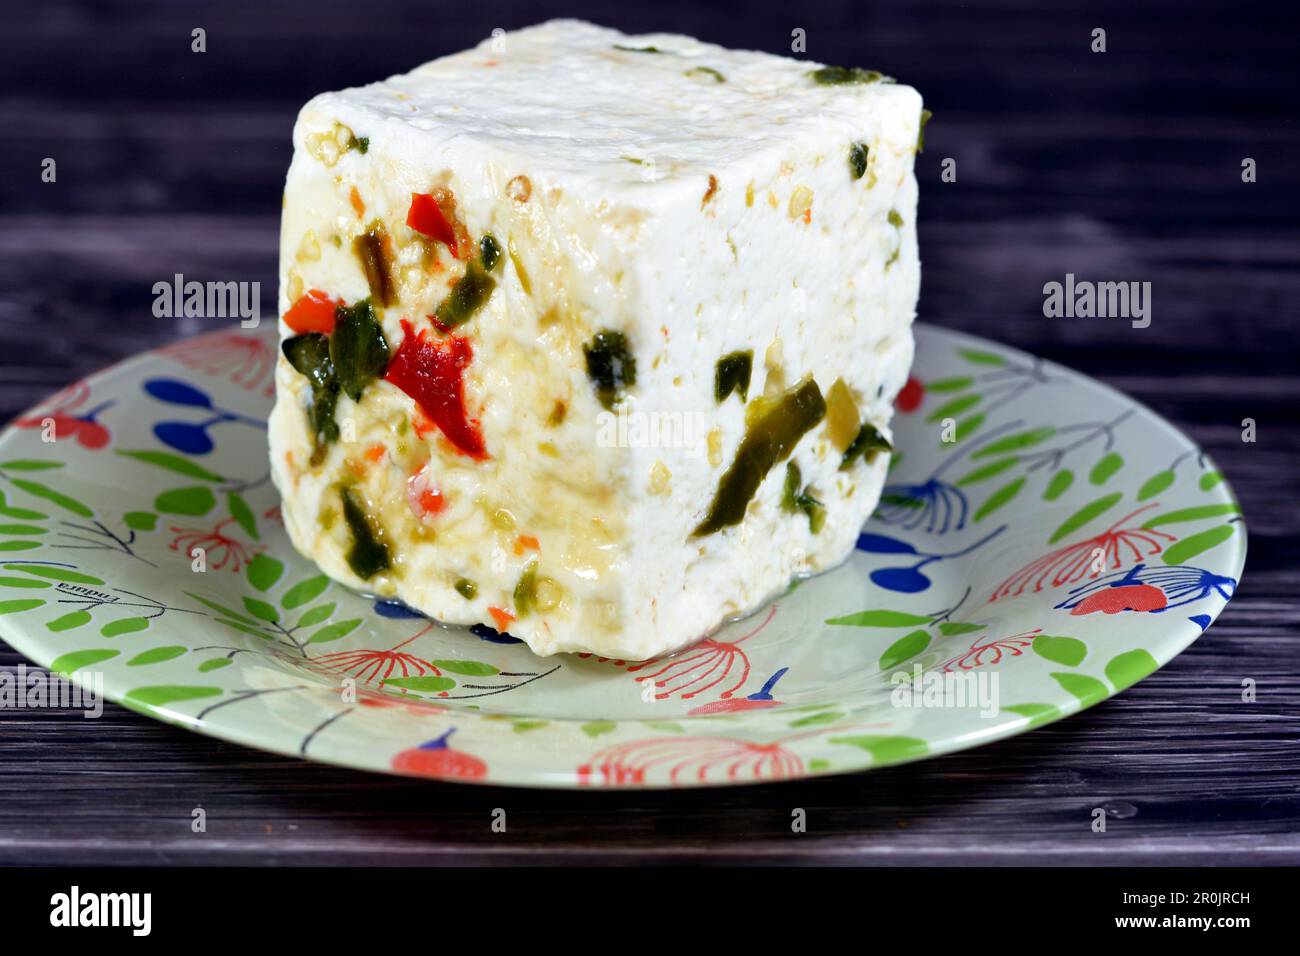 Assiette avec un cube de baril égyptien de fromage blanc de baramuli avec des tranches de poivrons rouges et verts, un fromage traditionnel du Moyen-Orient fait de table Banque D'Images